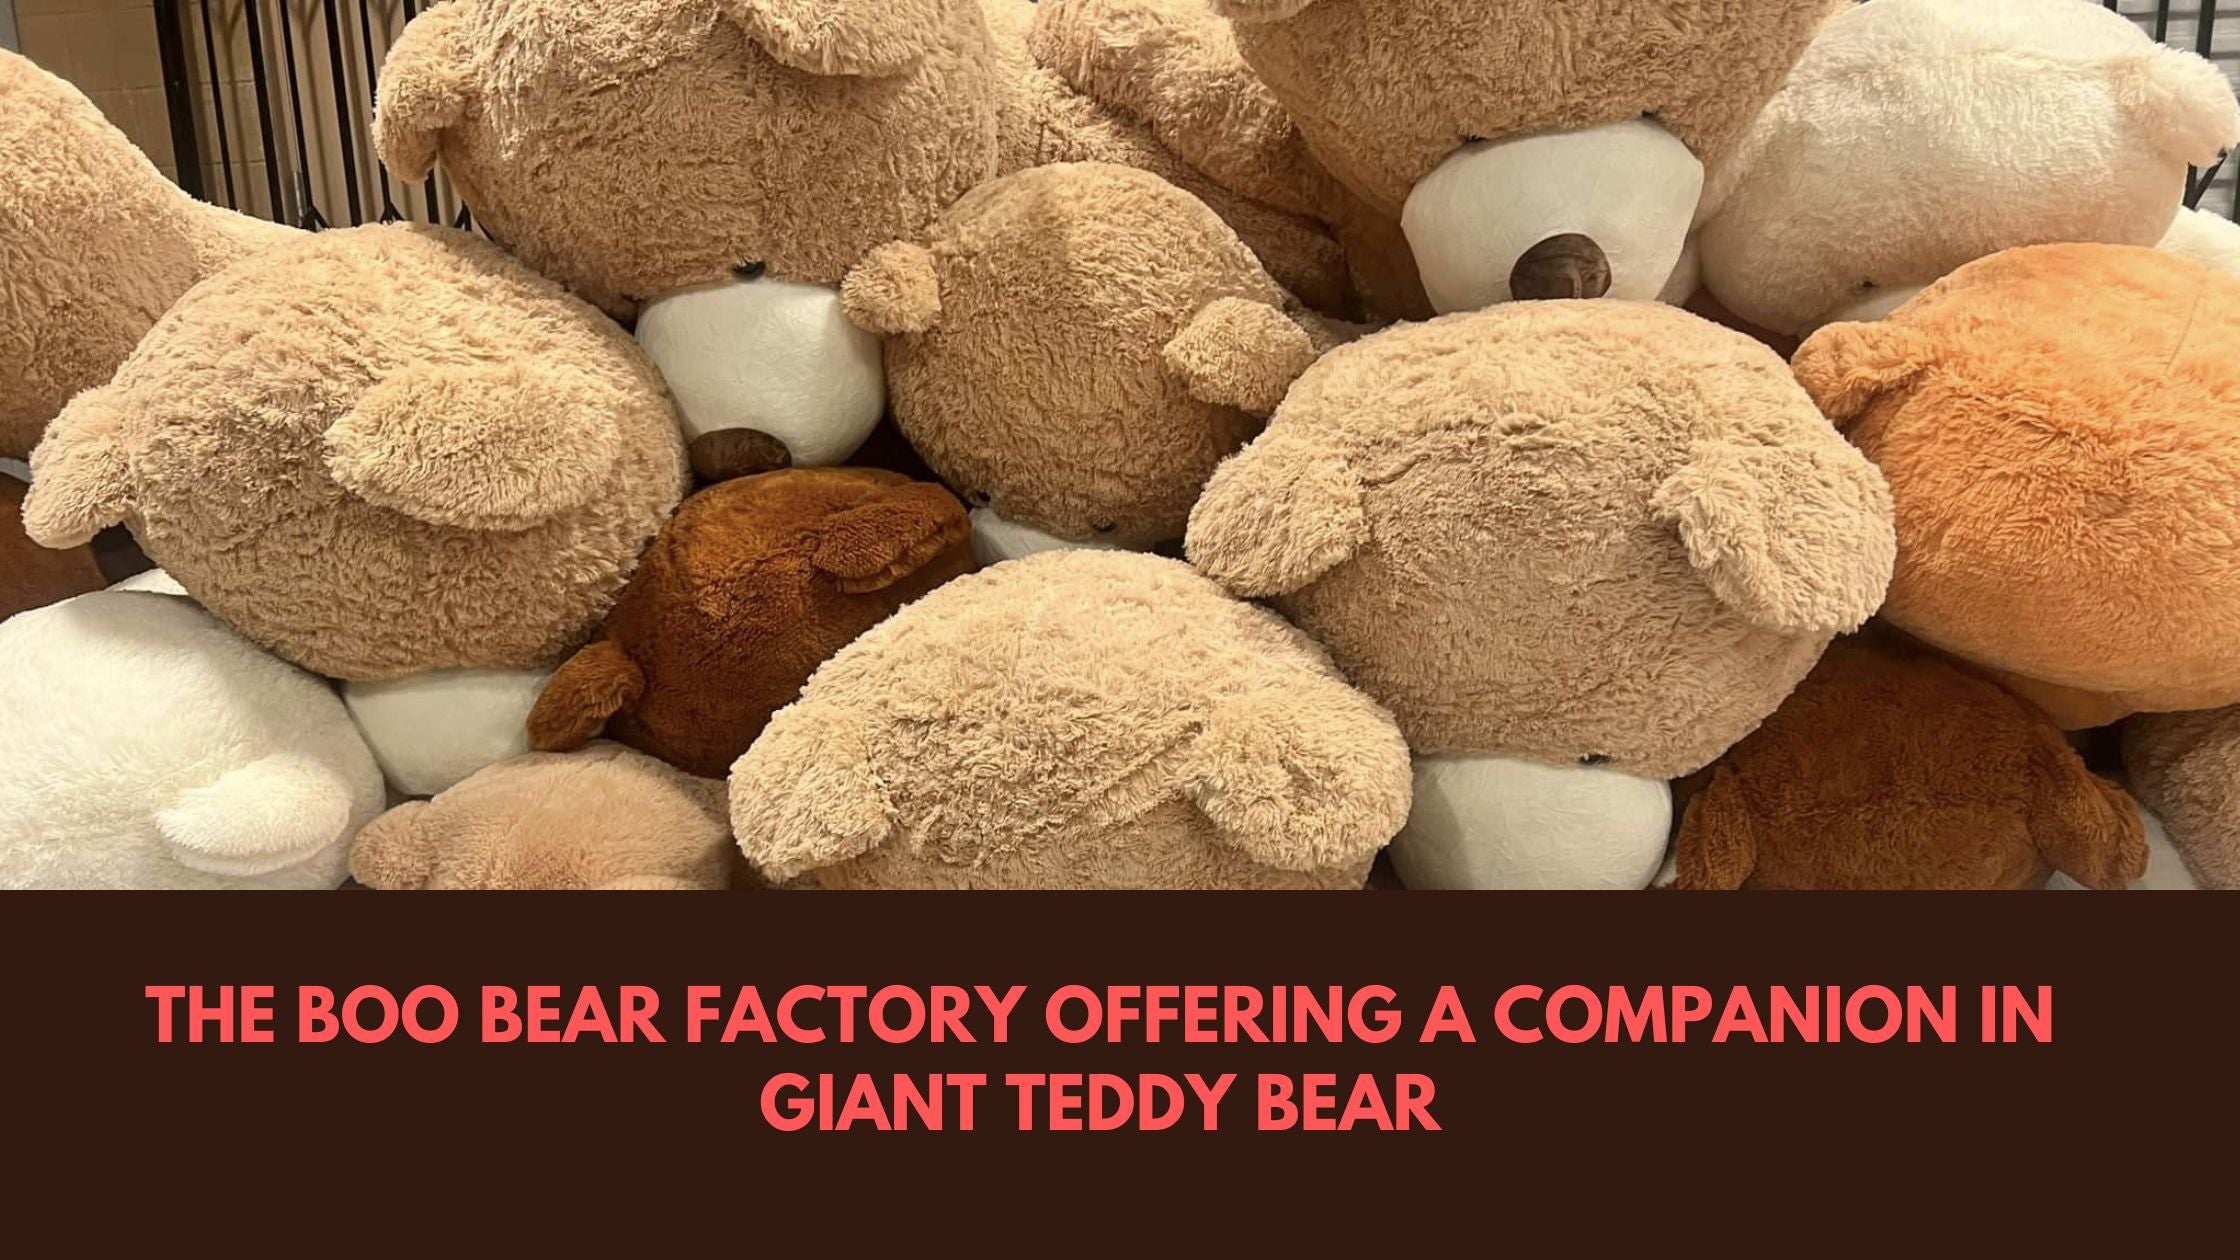 Giant teddy bear Cheap